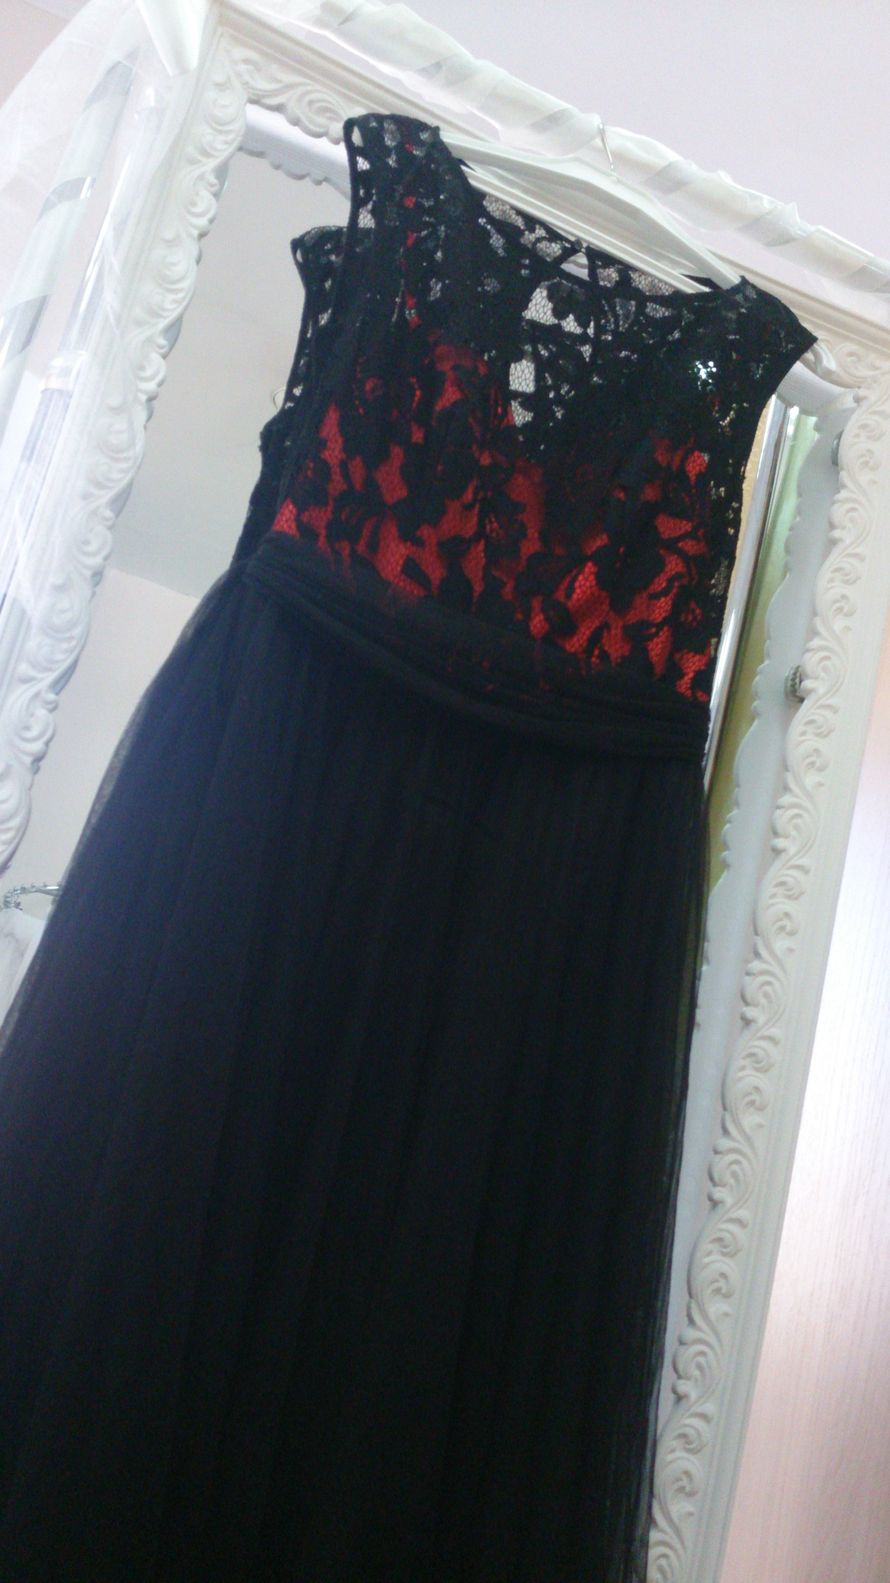 Вечернее платье в чёрно-красном цвете